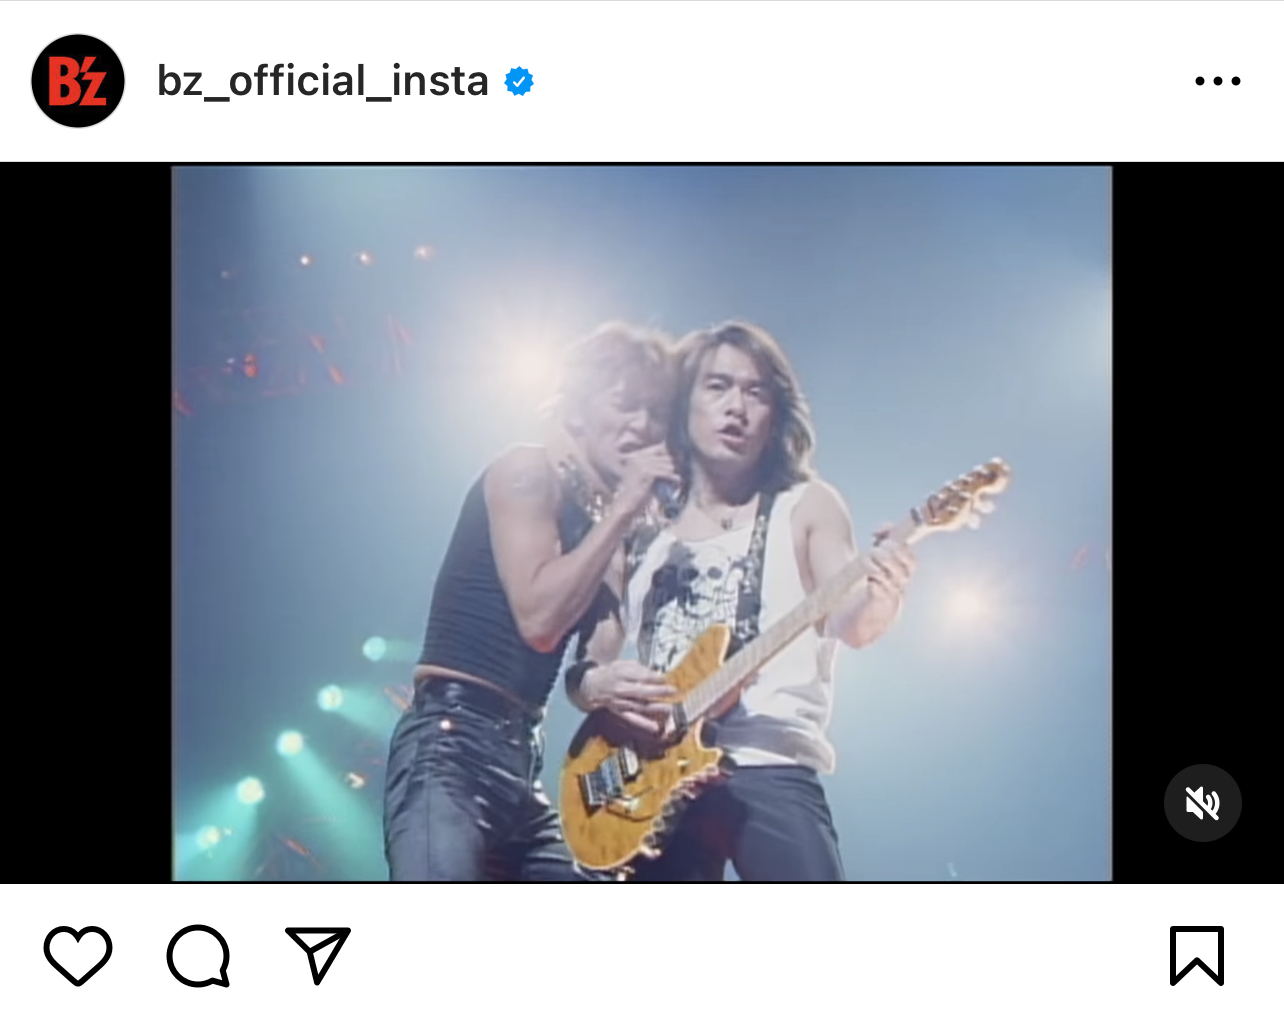 B'z公式Instagramに投稿された「Real Thing Shakes」のミュージック・ビデオ